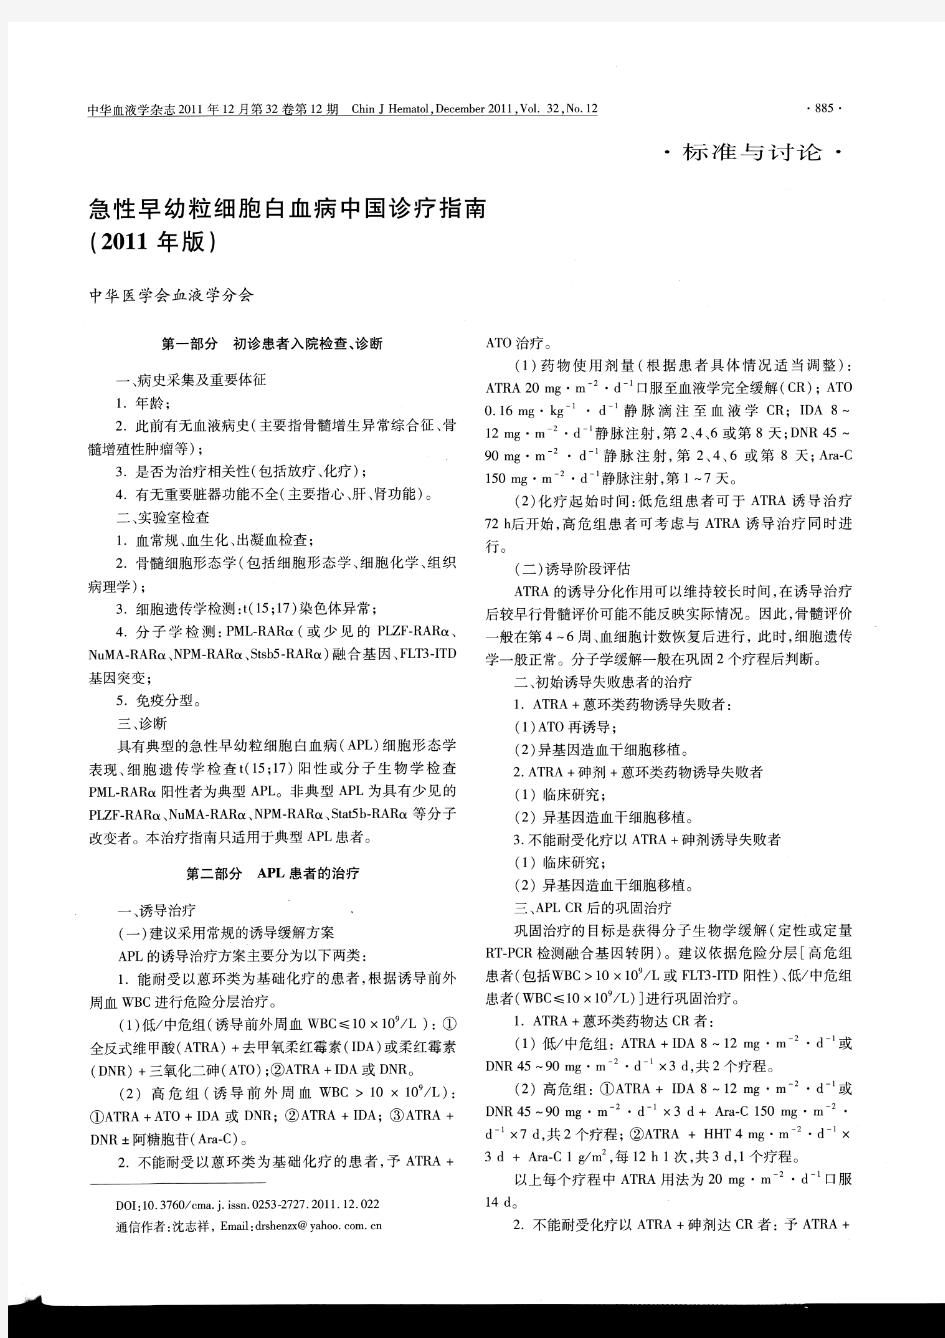 急性早幼粒细胞白血病中国诊疗指南(2011年版)